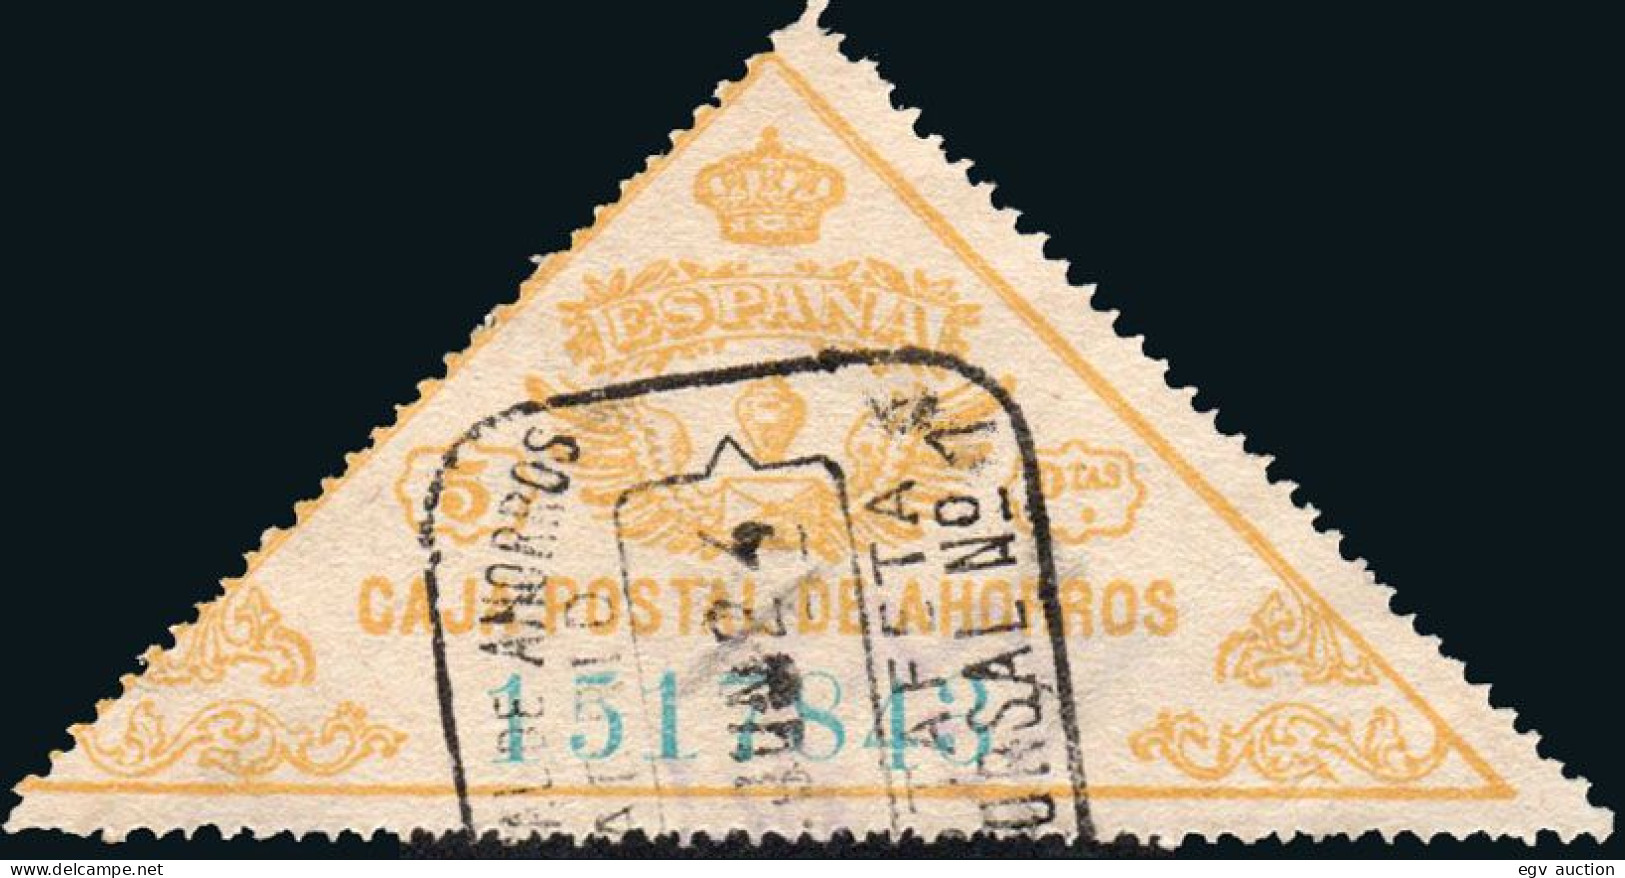 Madrid - Caja Postal Ahorros - Gálvez O 5 - Mat "Estafeta Sucursal N.º 1 - Caja Postal Ahorros" - Fiscale Zegels